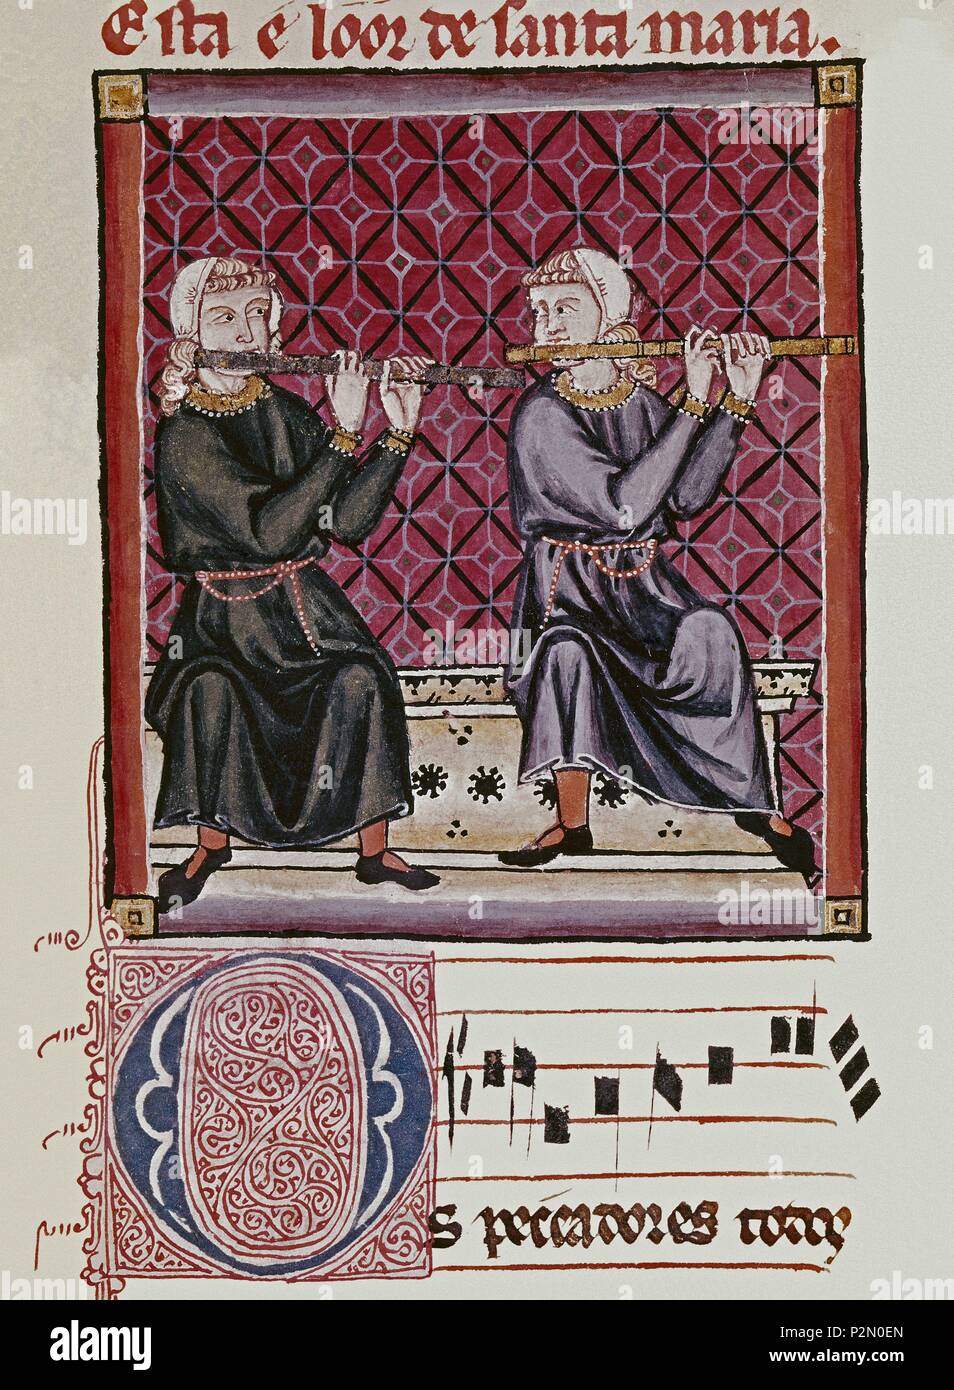 Alfonso X el Sabio and the Cantigas de Sta. Maria.